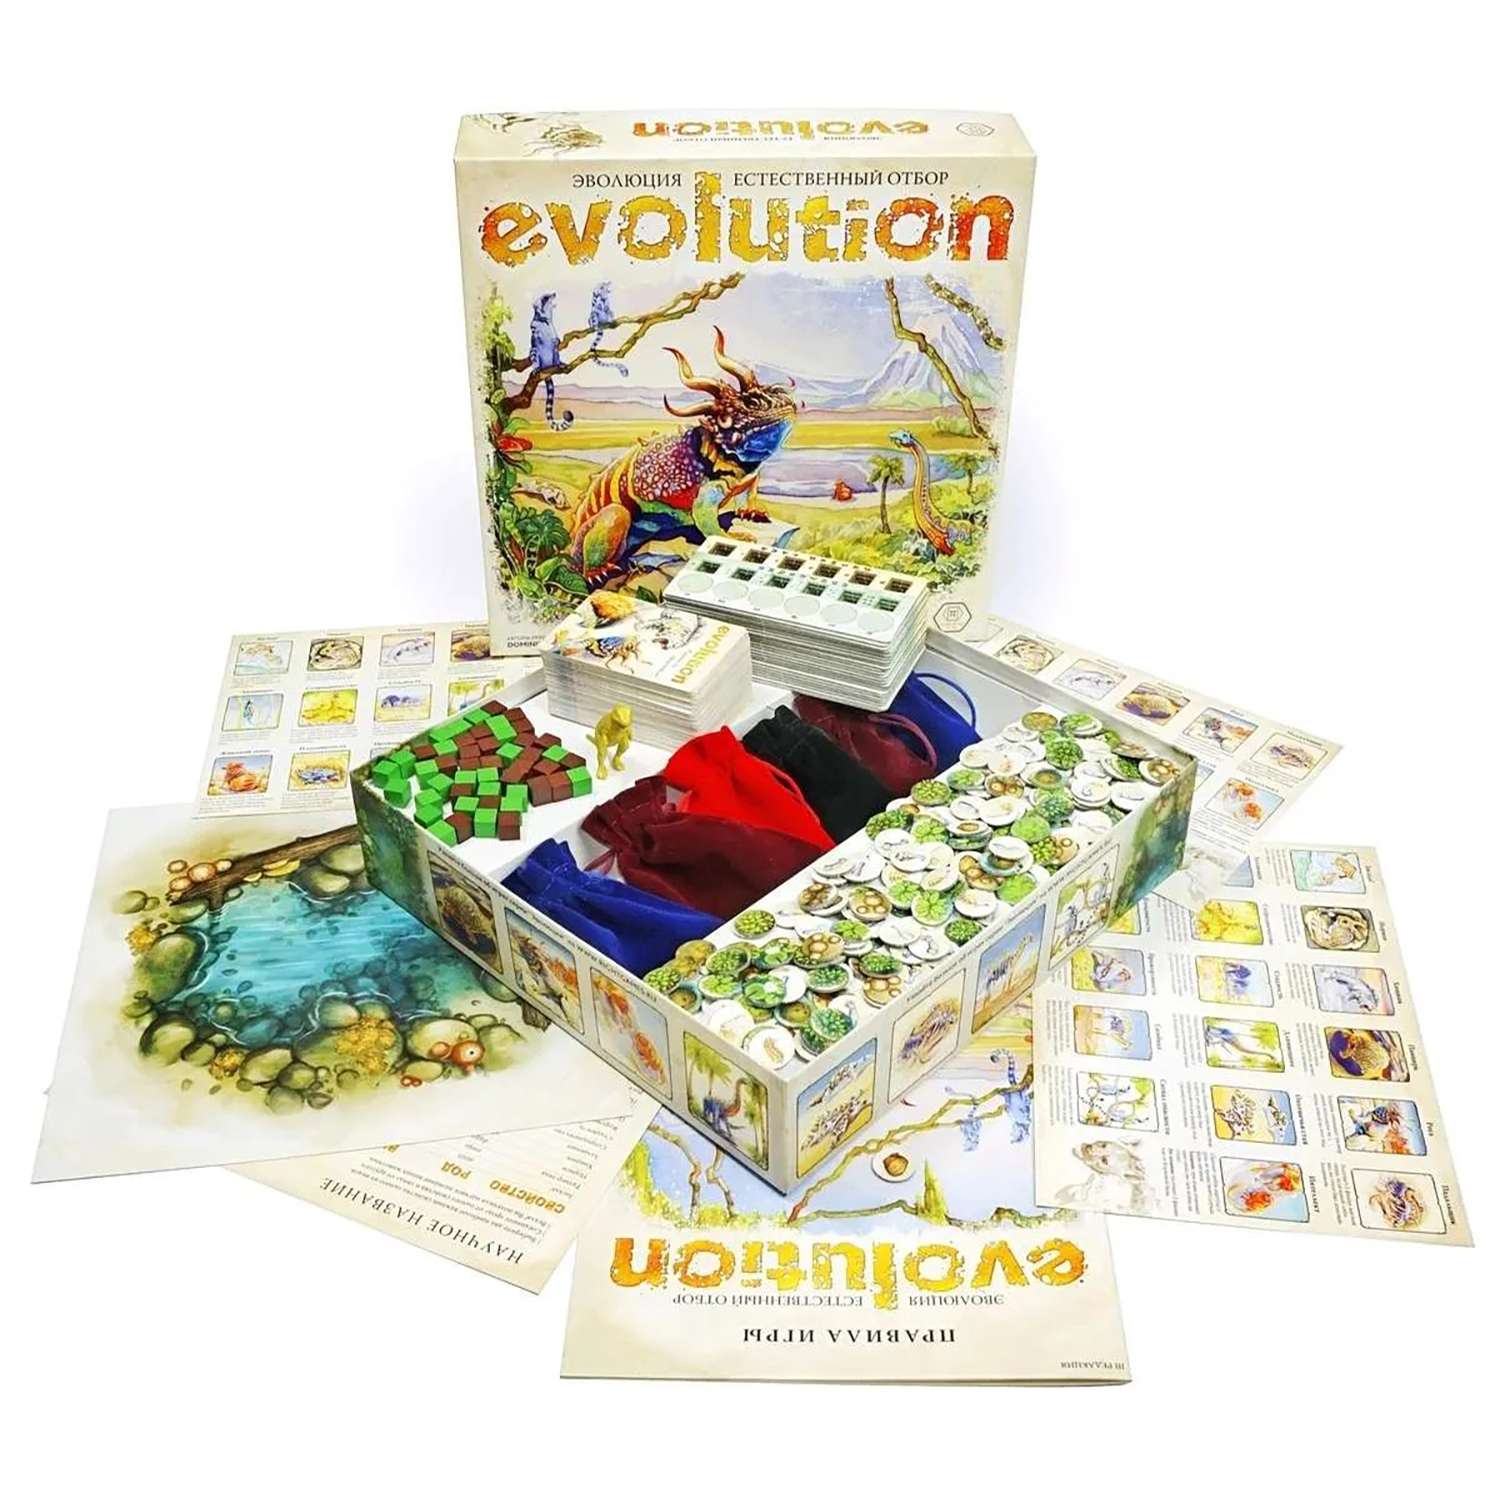 Эволюция настольная купить. Evolution настольная игра. Игра Эволюция естественный отбор. Игра Эволюция настолка. Настольная игра правильные игры 13-03-01 Эволюция. Естественный отбор.